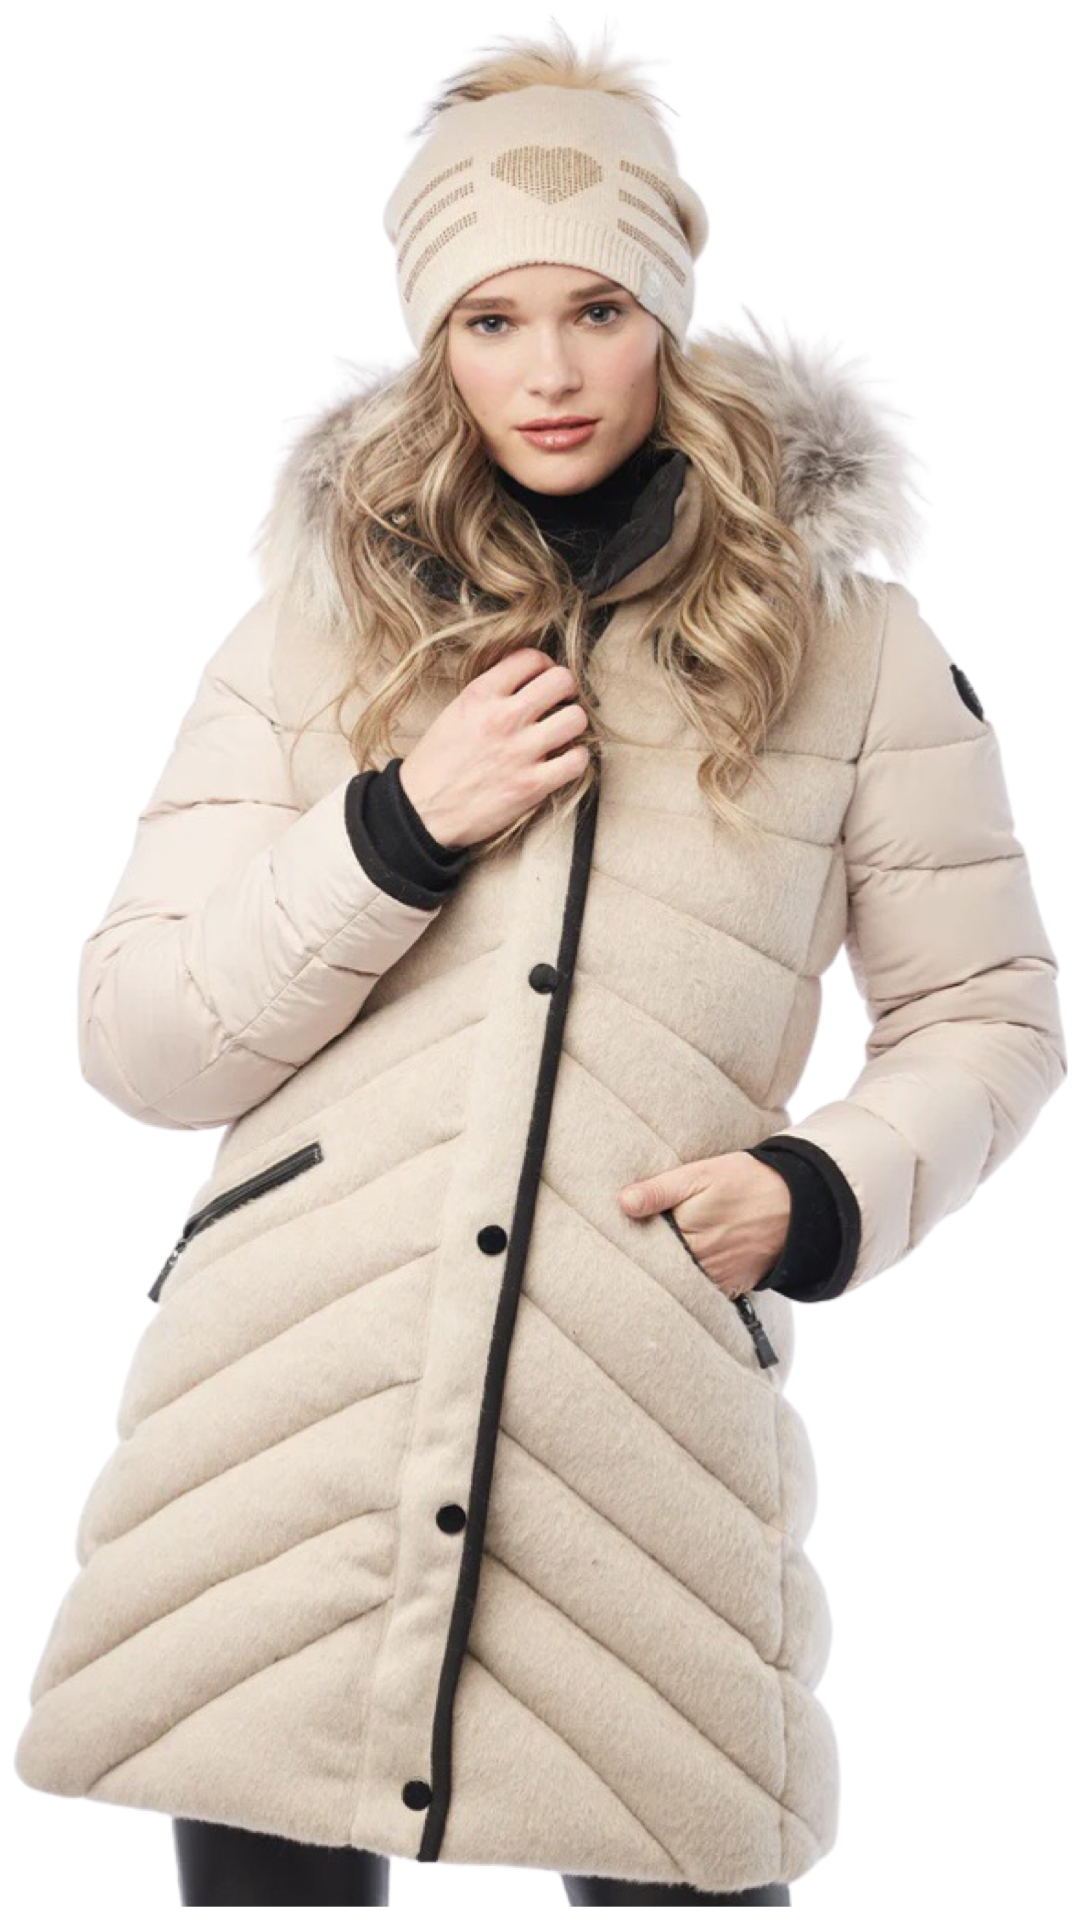 SALE, Alpaca winter coat made in Canada